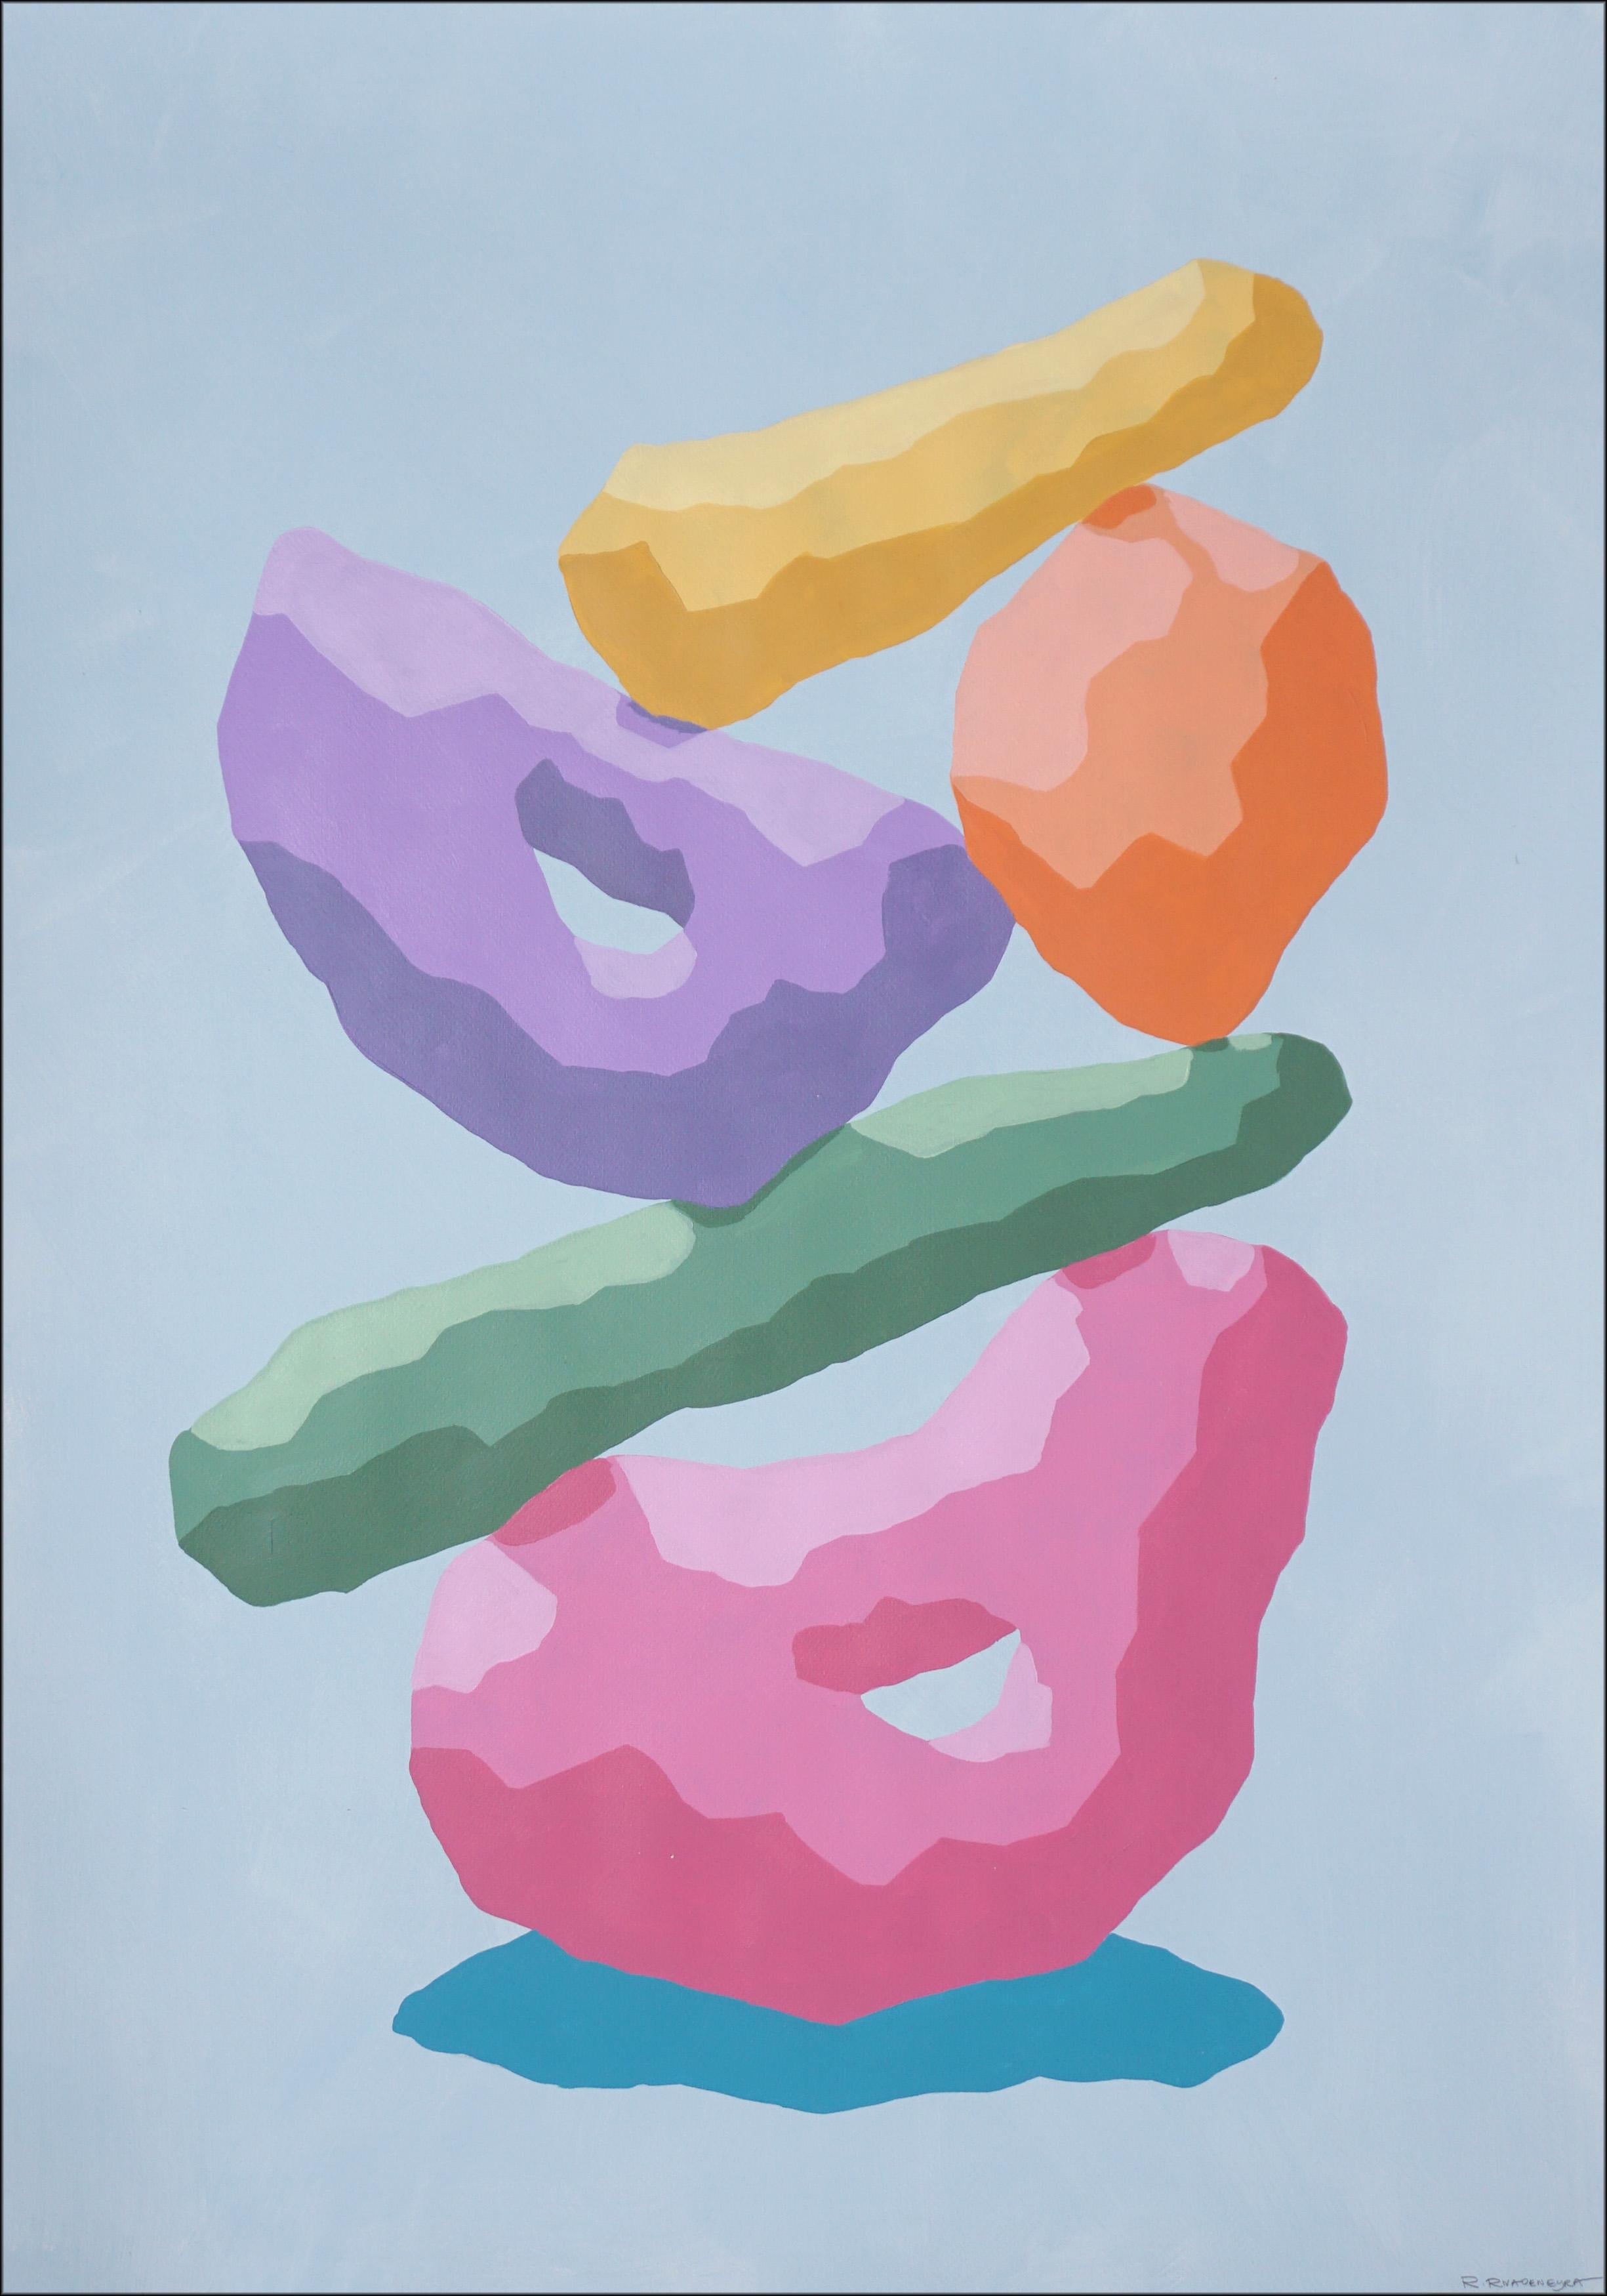 Abstract Painting Ryan Rivadeneyra - Totem arc-en-ciel aux tons pastel, sculpture de style rendu 3D, formes roses, bleues, jaunes